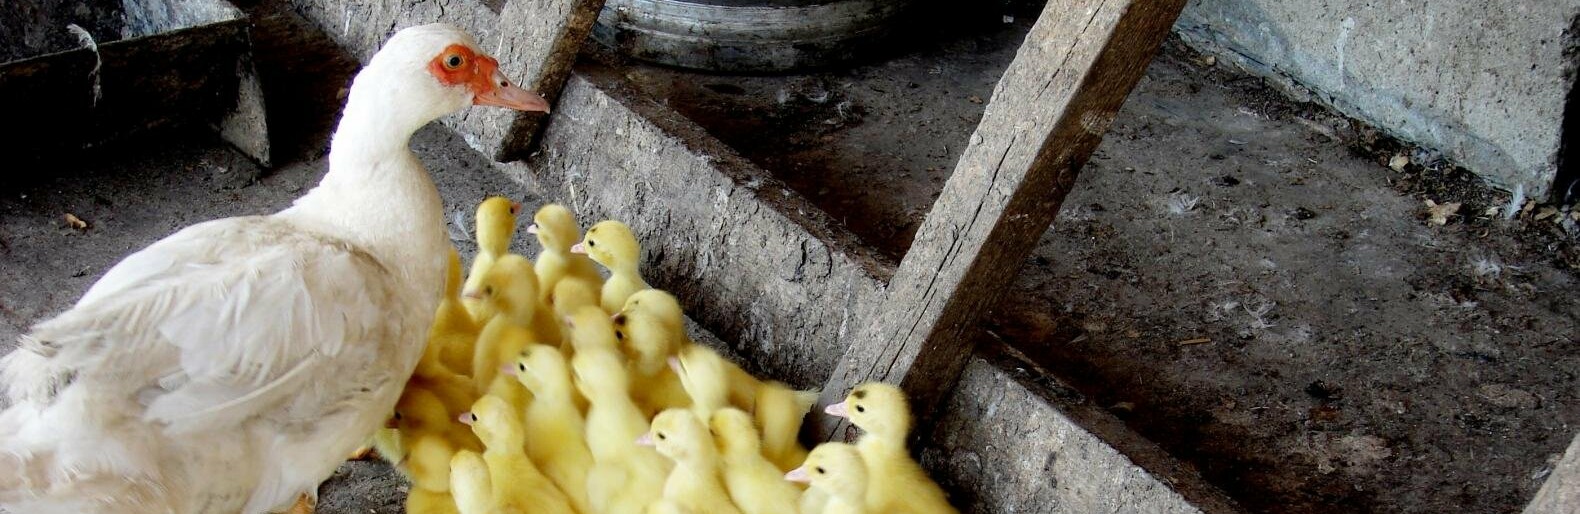 В Ростовской области уничтожат тысячи голов птицы из-за вспышки гриппа